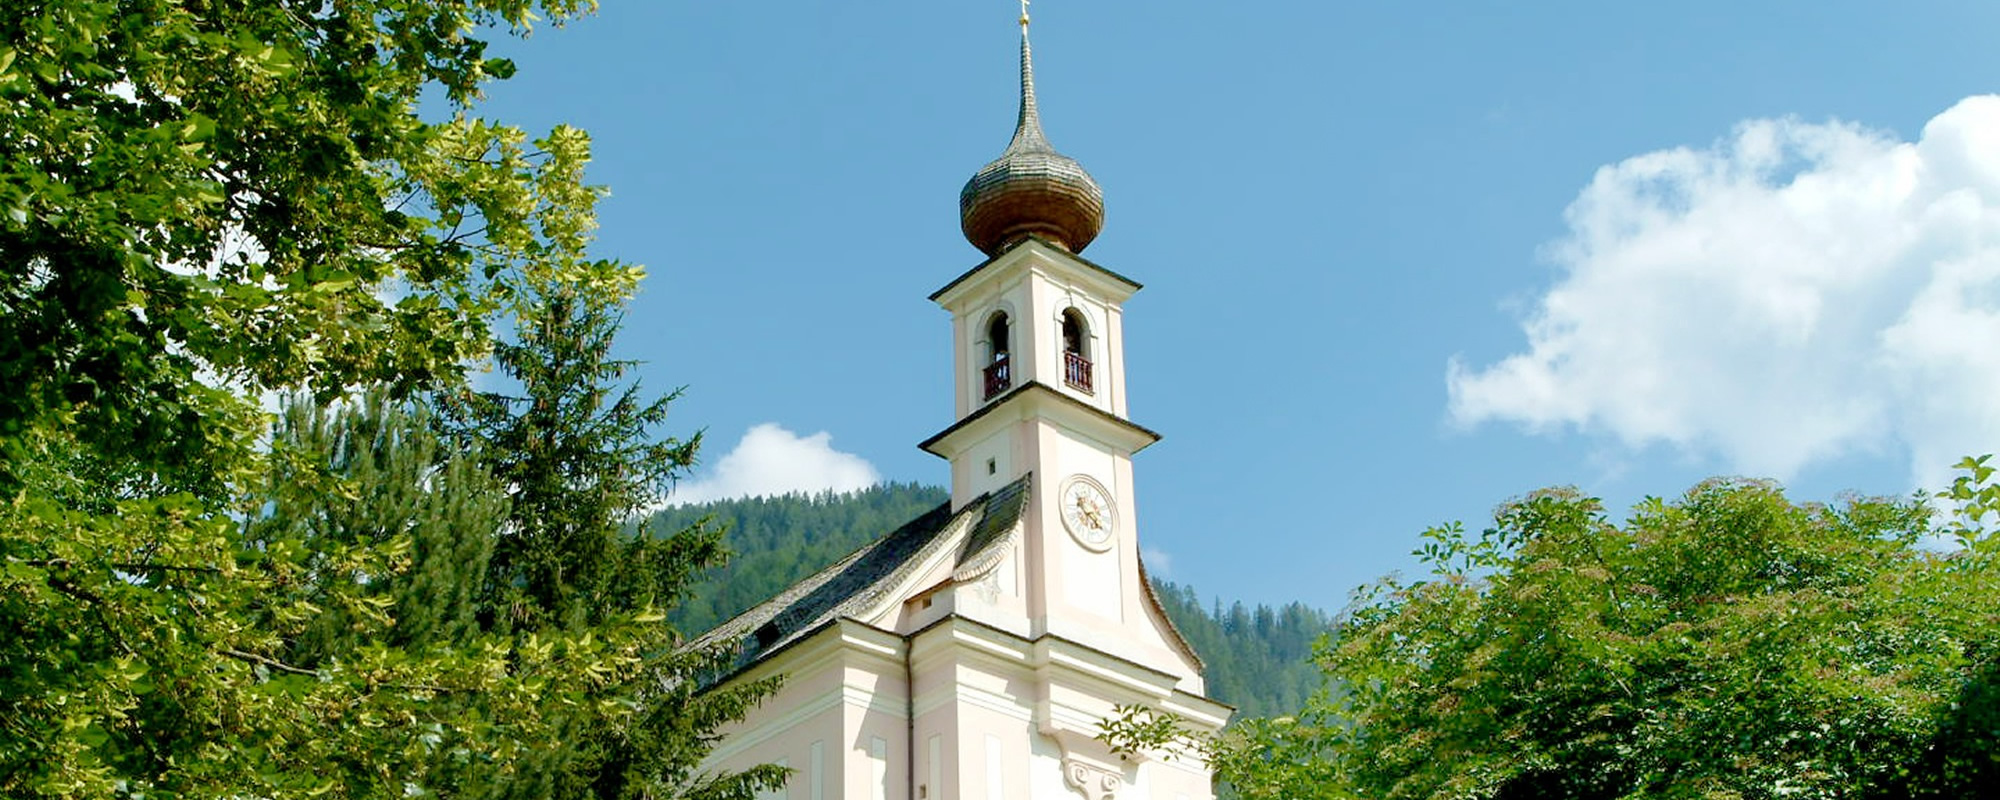 Pfarrkirche Flachau - Aufnahme im Sommer